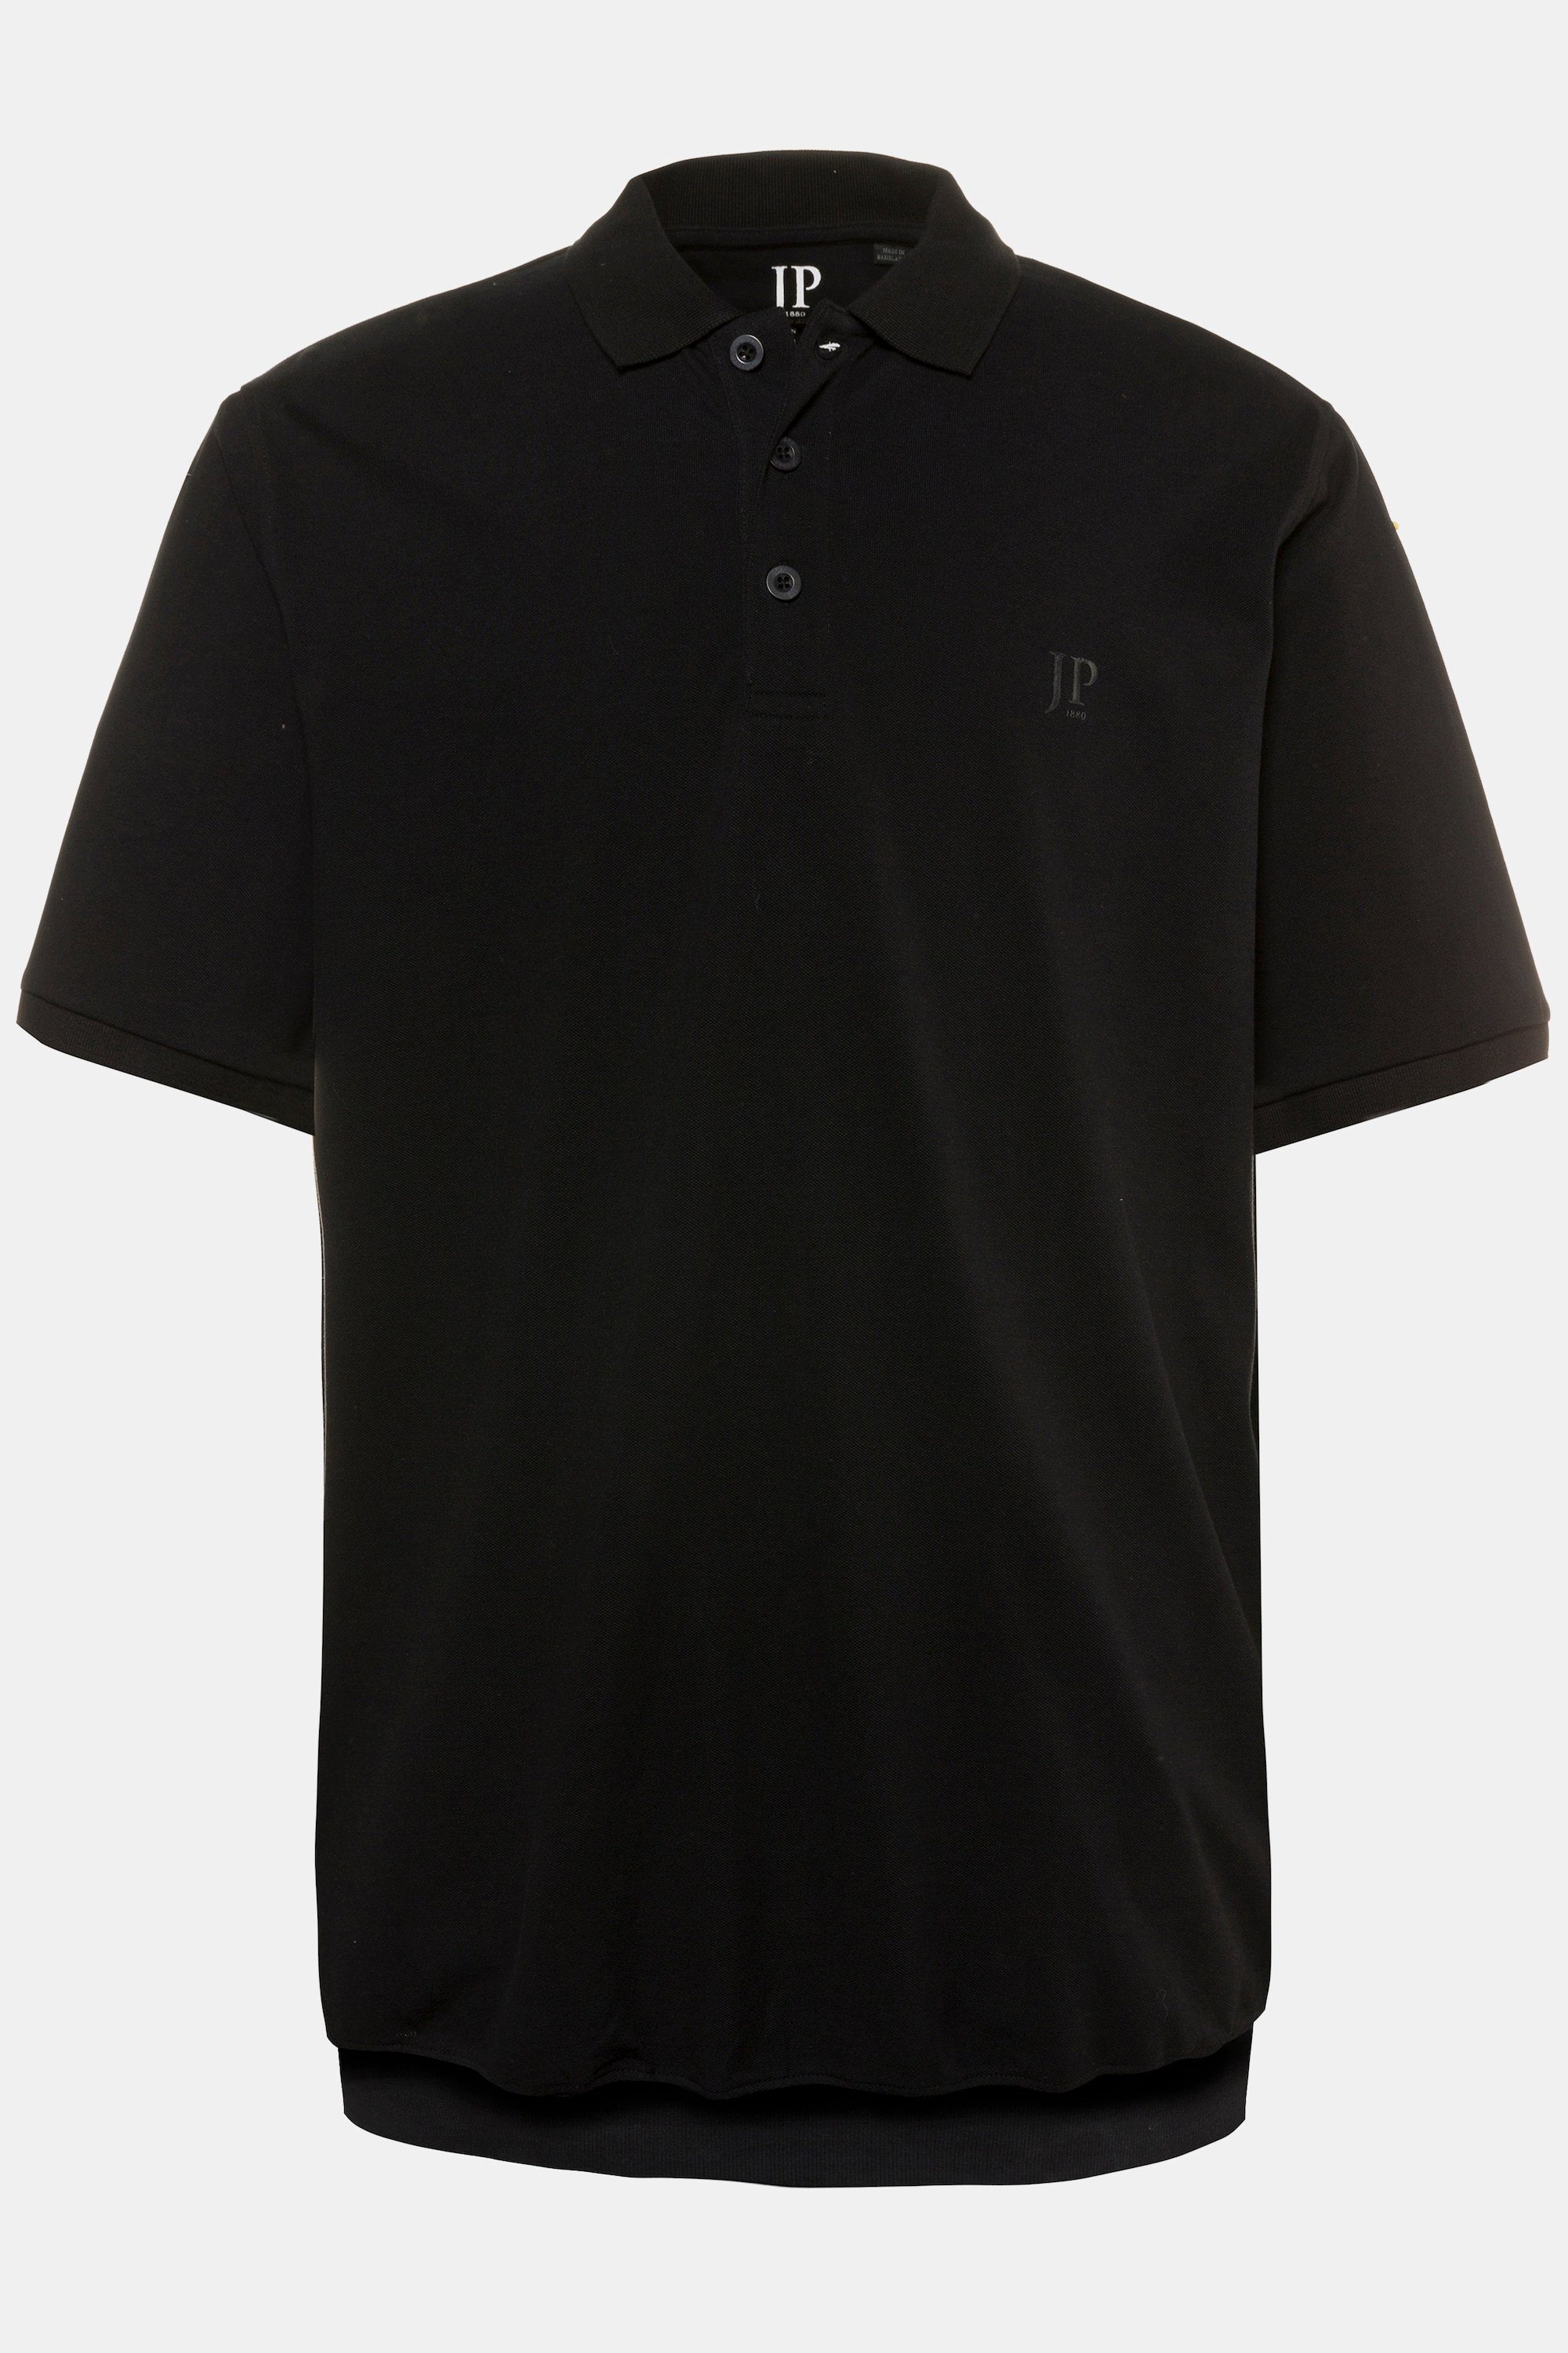 bis 10XL Piqué Poloshirt Bauchfit Basic schwarz JP1880 Poloshirt XXL